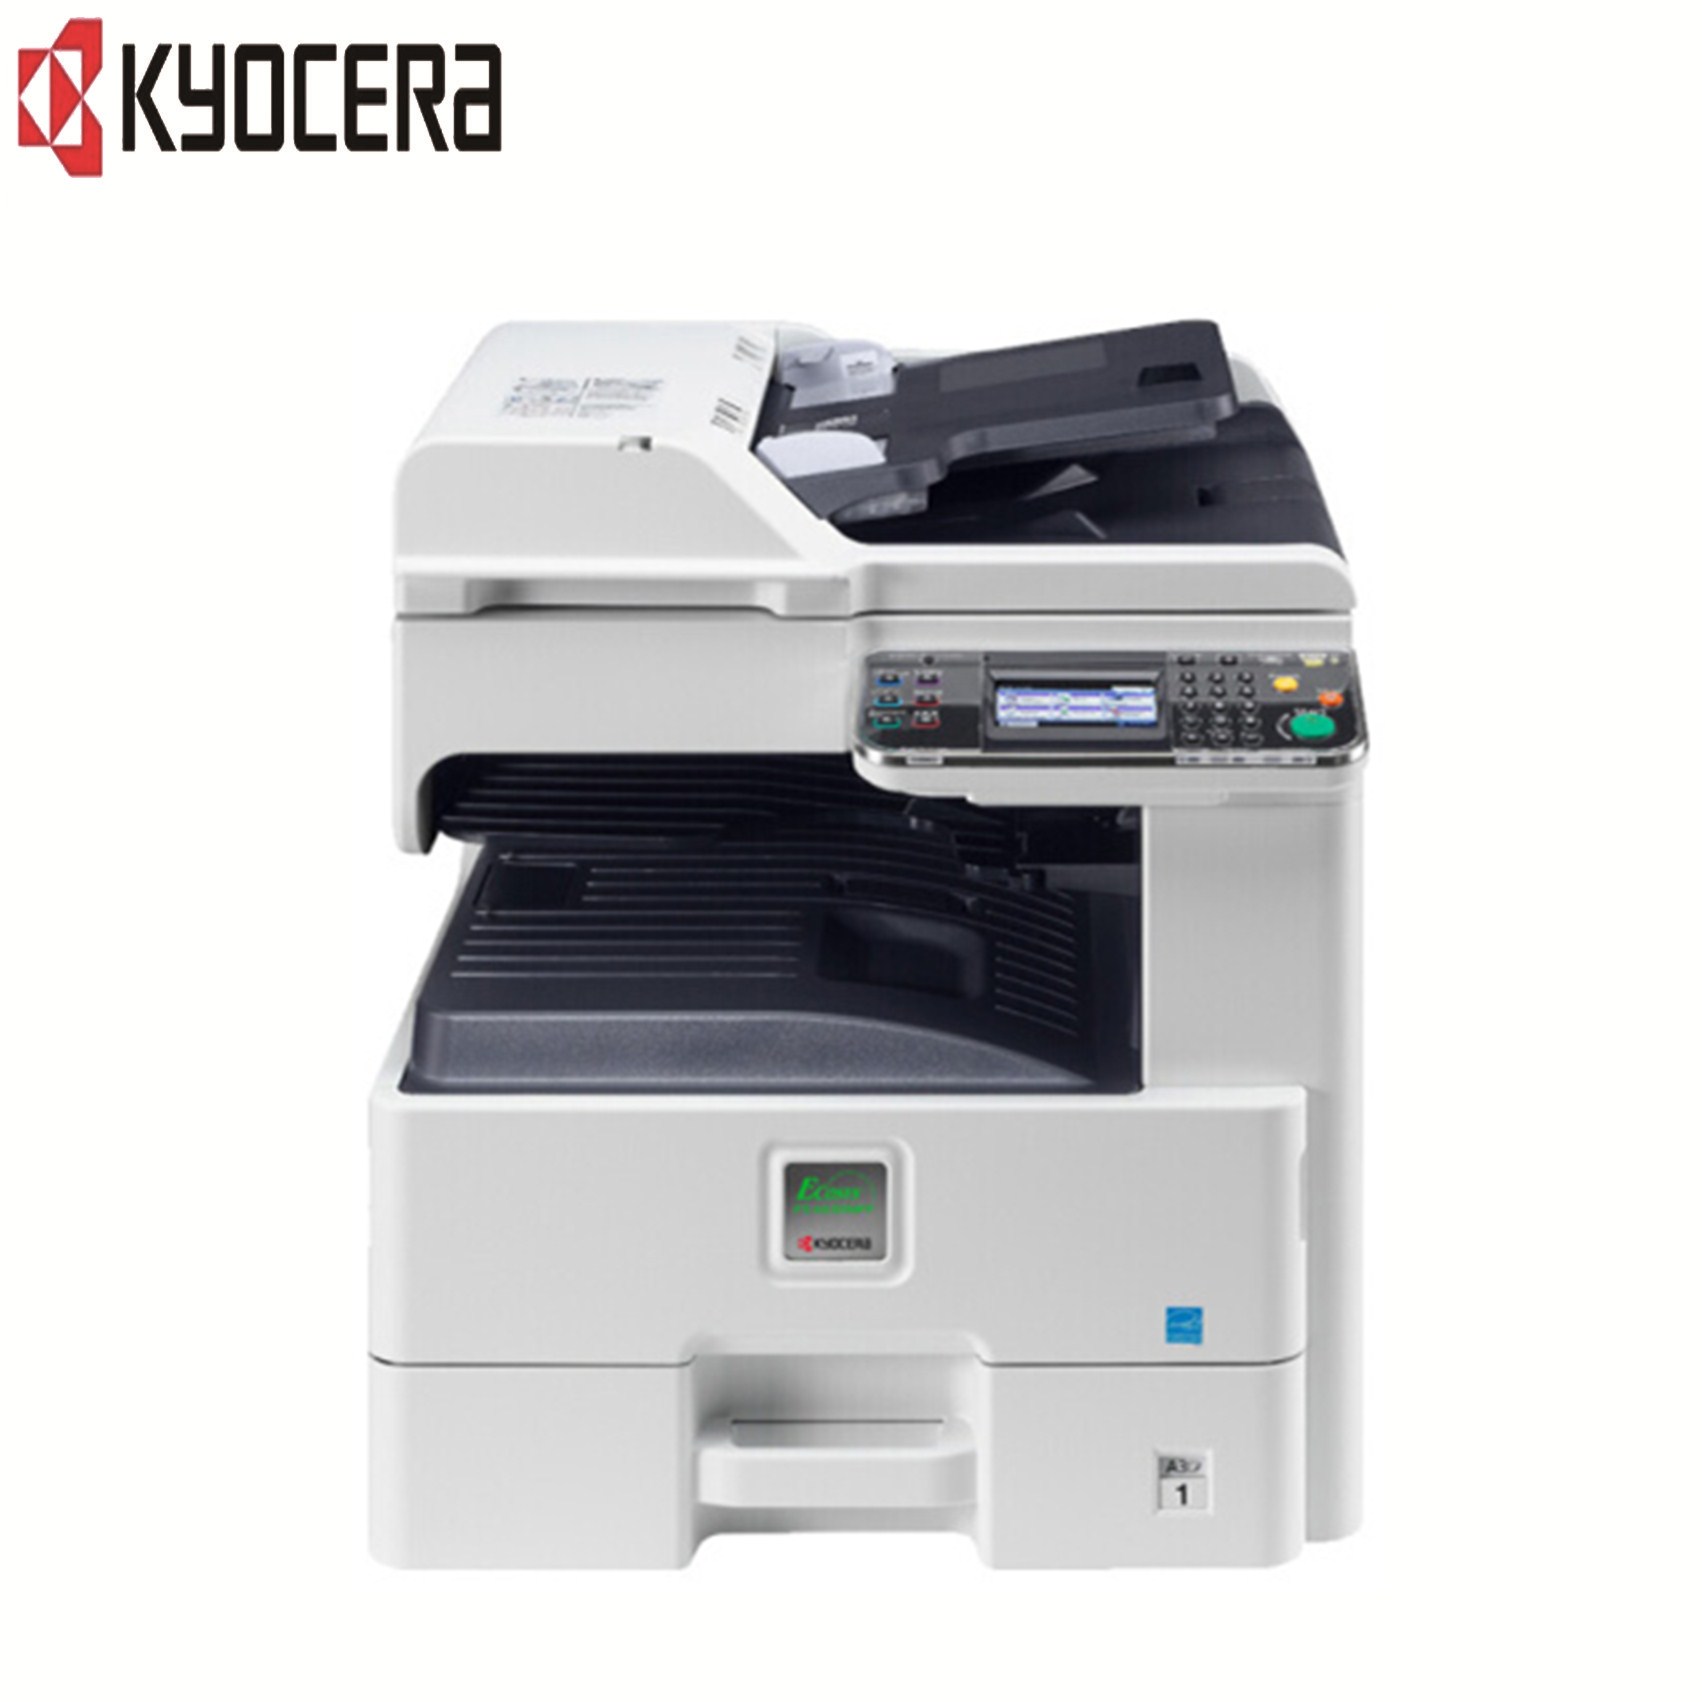 京瓷(KYOCERA)FS-6525MFP黑白数码复印机 (打印/复印/扫描)